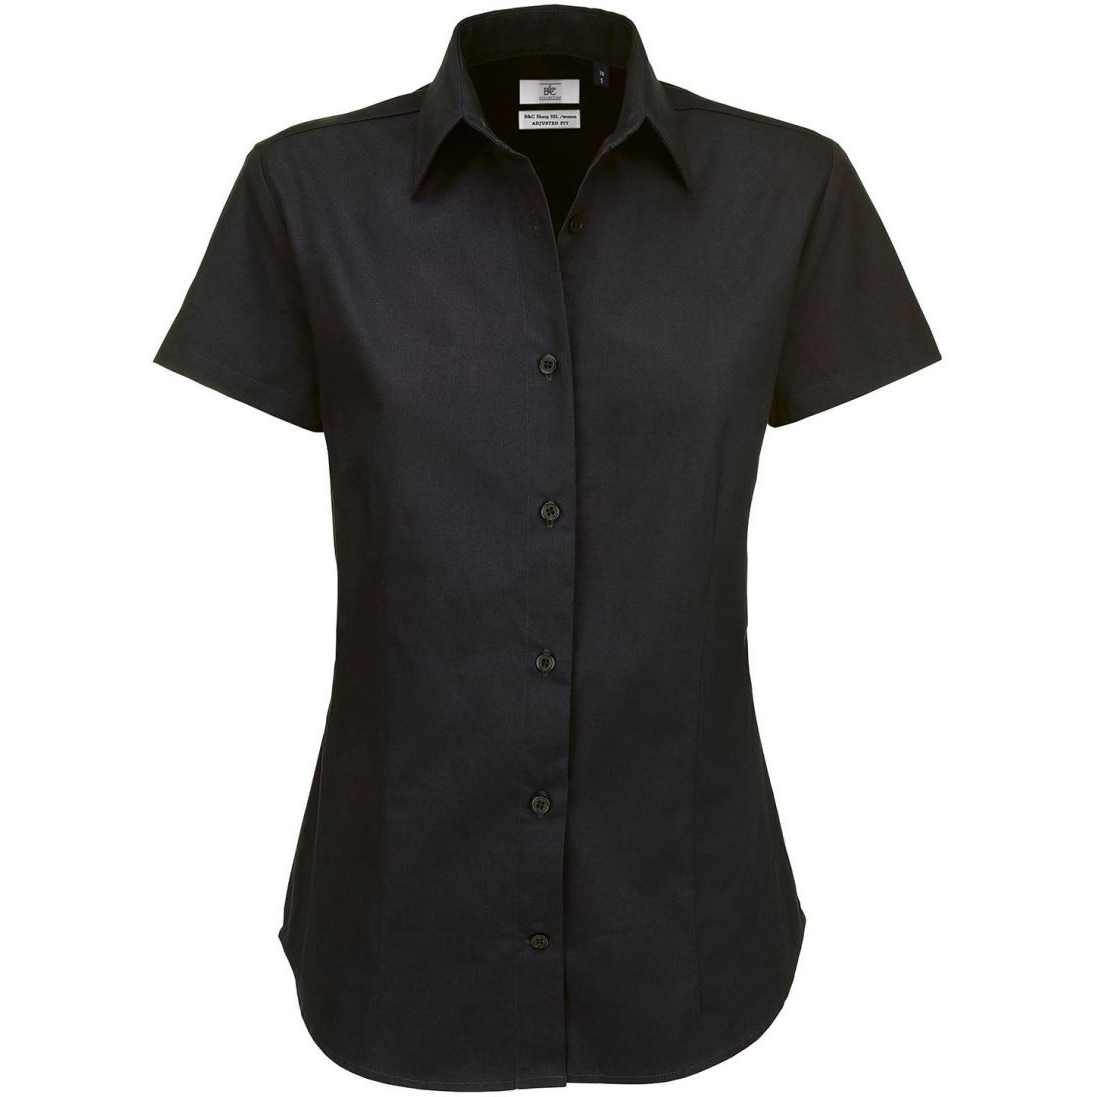 Dámská keprová košile B&C Sharp s krátkým rukávem - černá, 3XL